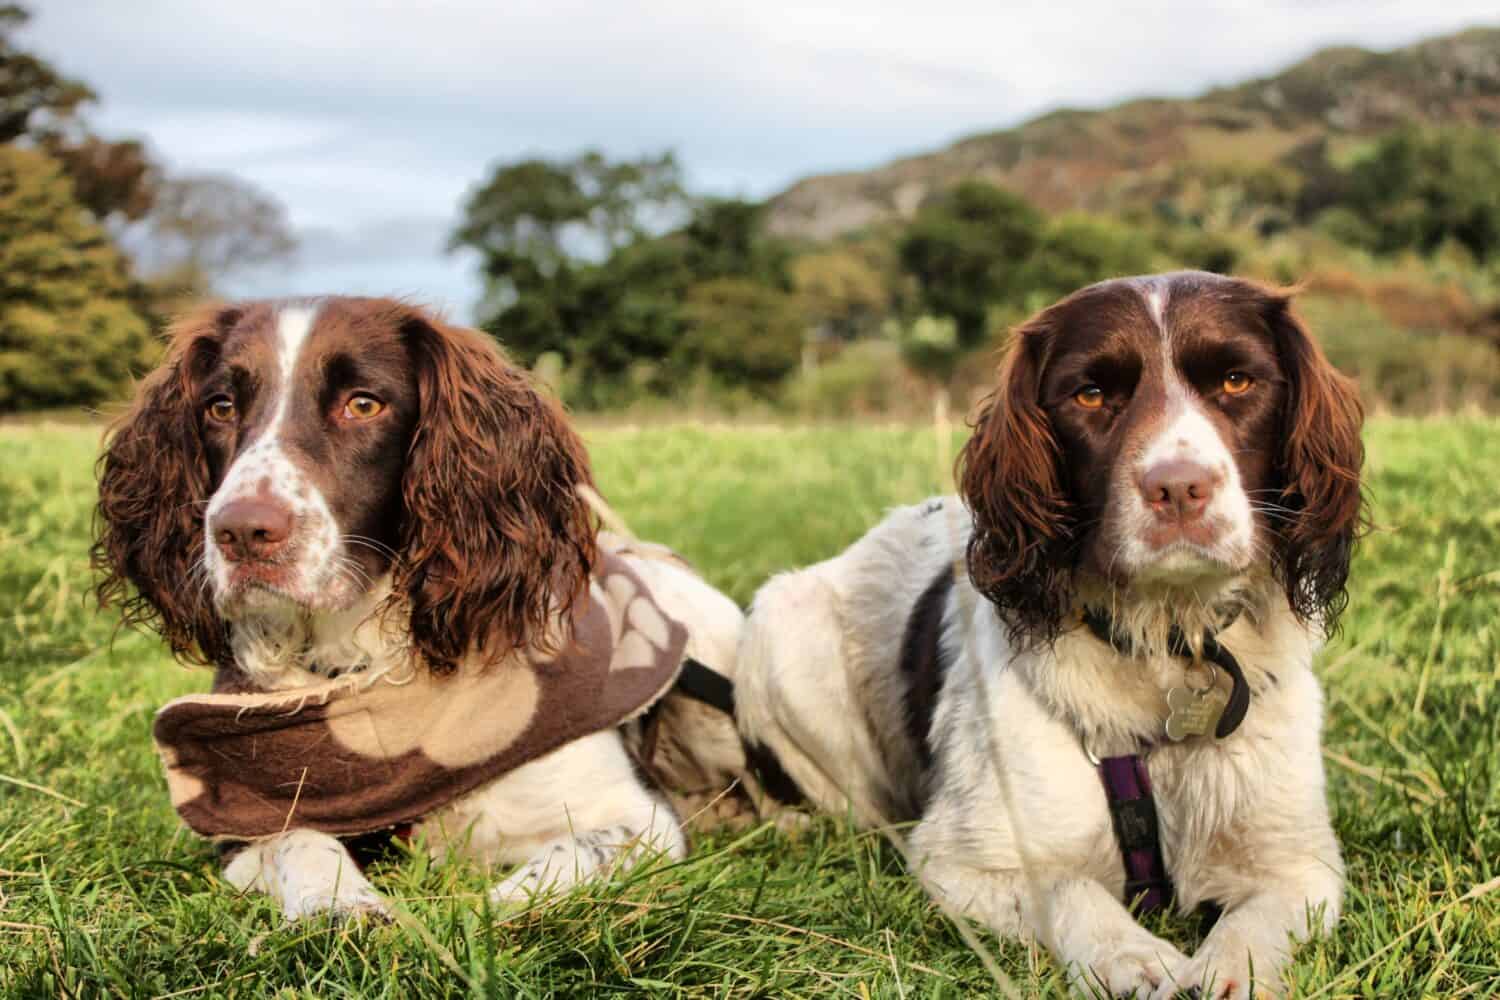 due graziosi cani da caccia da compagnia springer spaniel inglesi di tipo fegato e bianco da lavoro